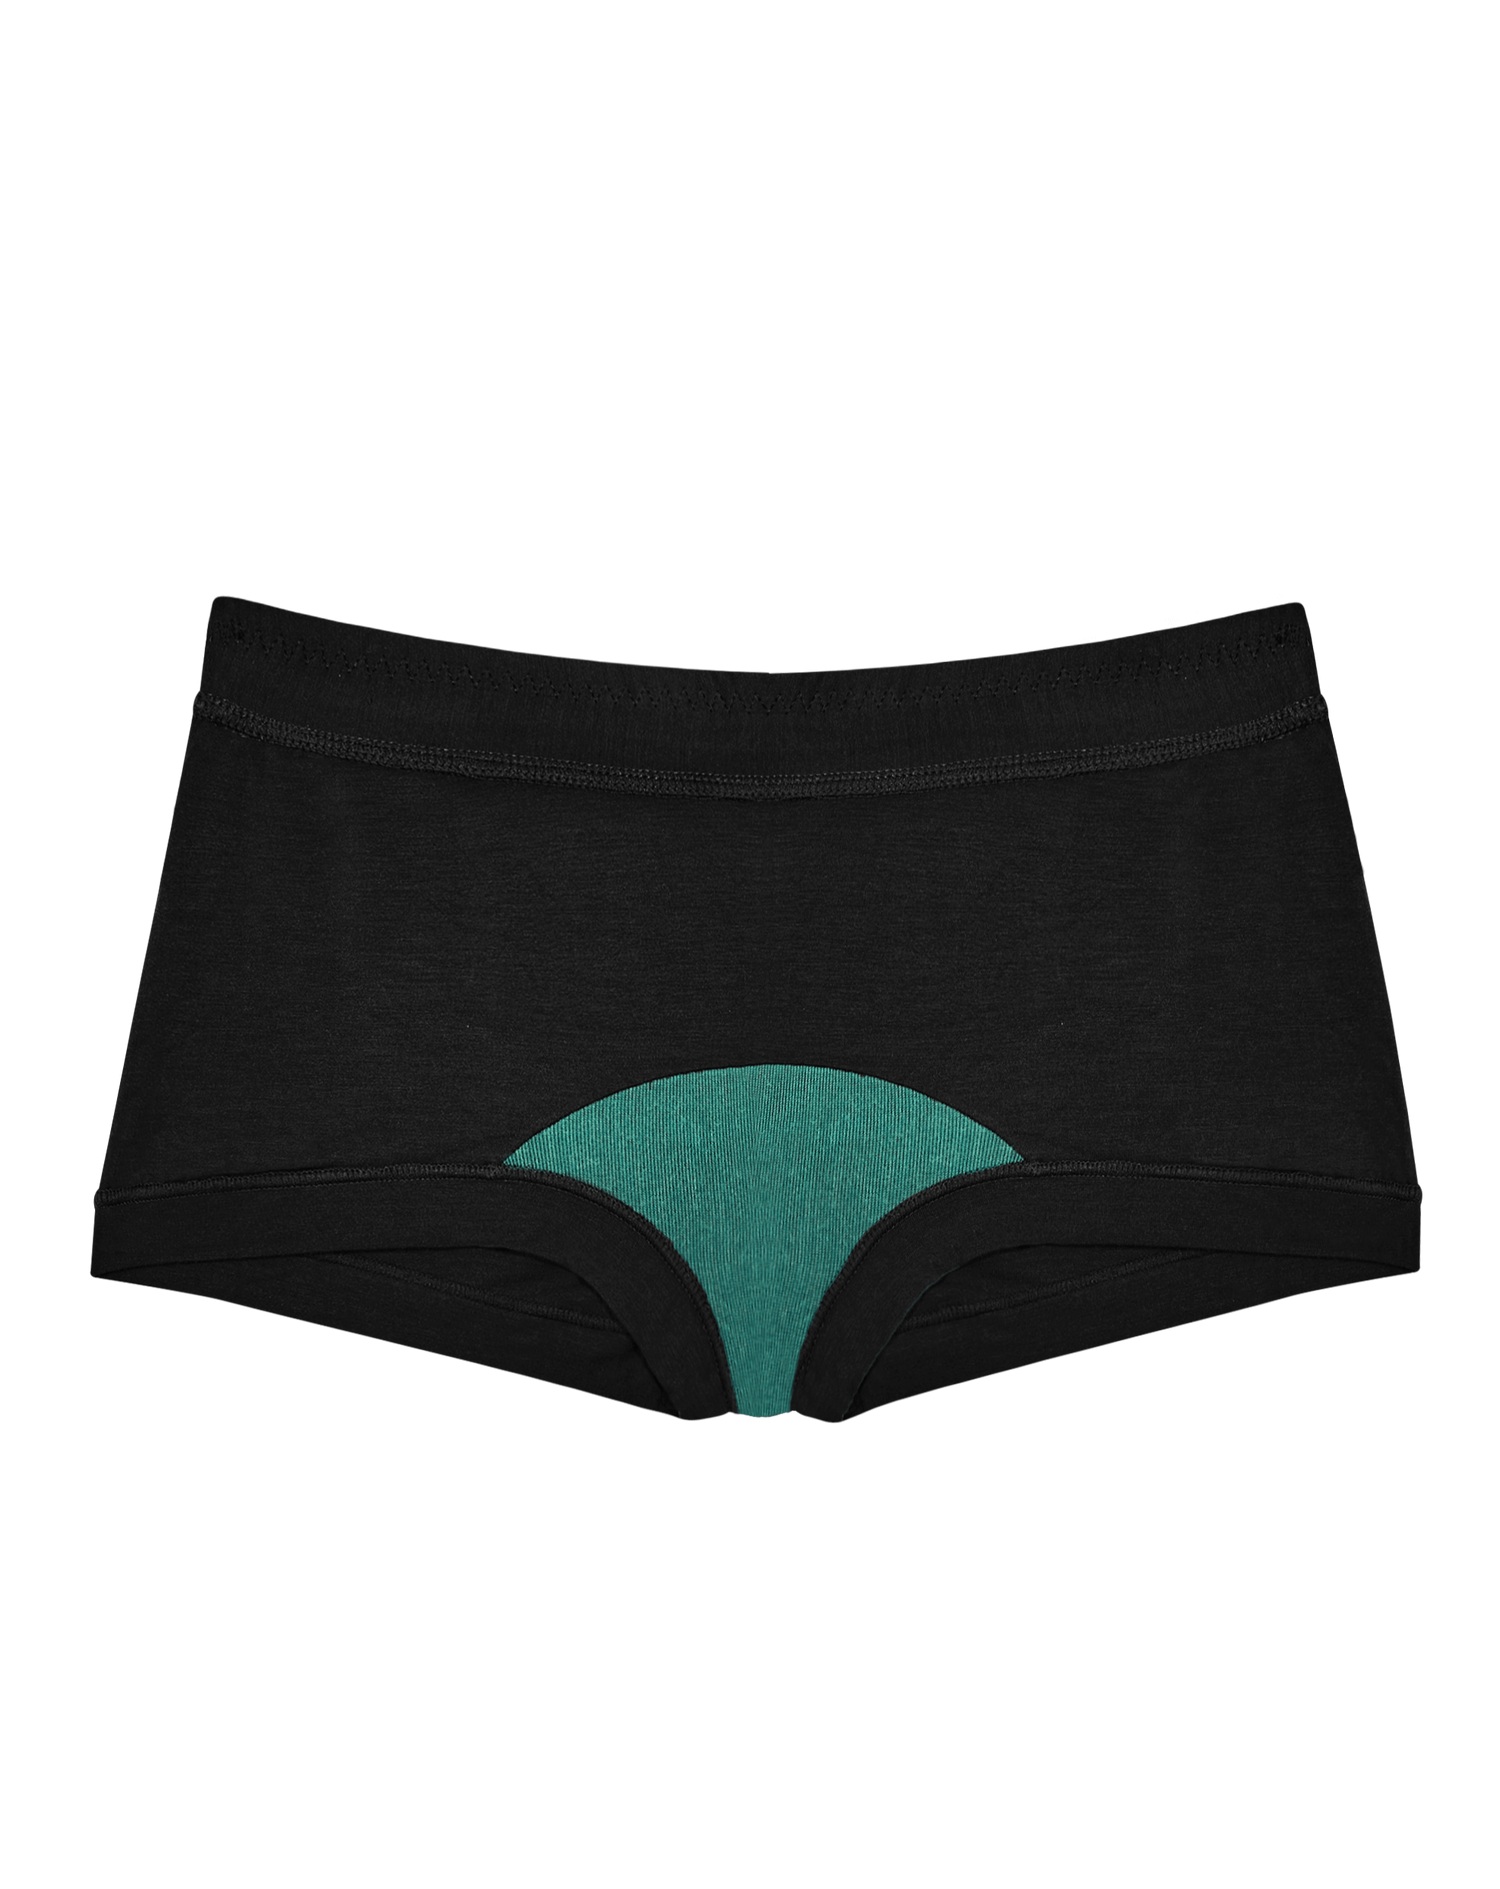 Woxer Women's Boxer Briefs Underwear, Biker 9” Boyshorts, Exercise